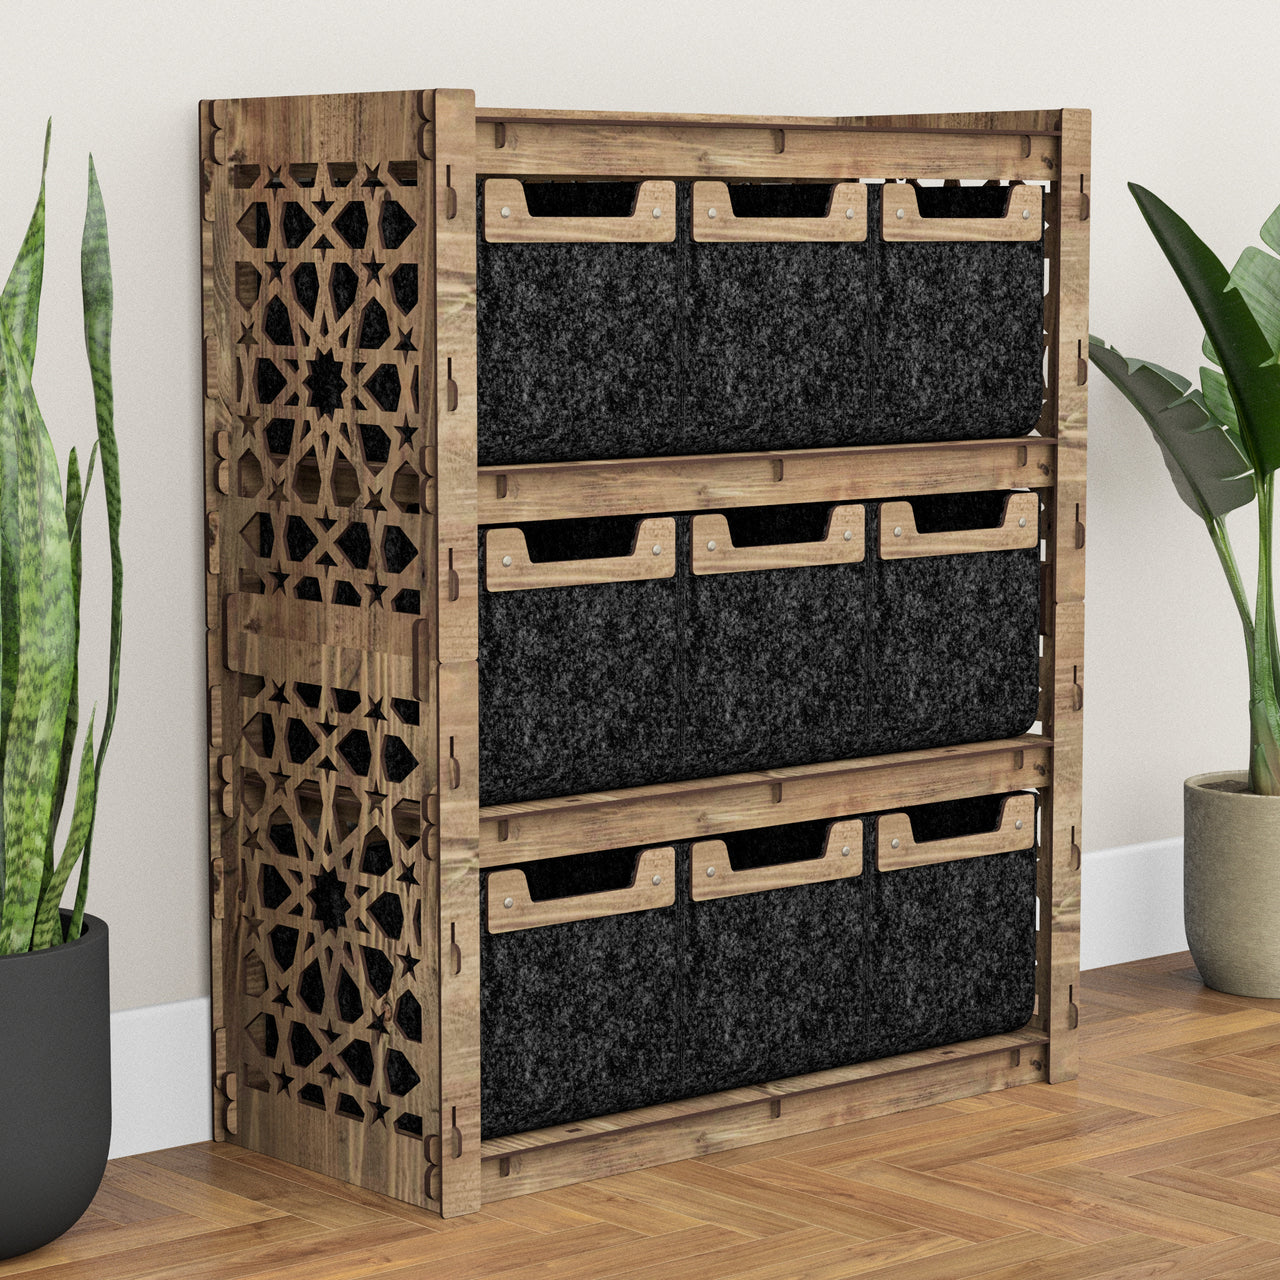 Arabic Dresser 9 Drawers Storage Unit [9 SMALL BLACK BINS]